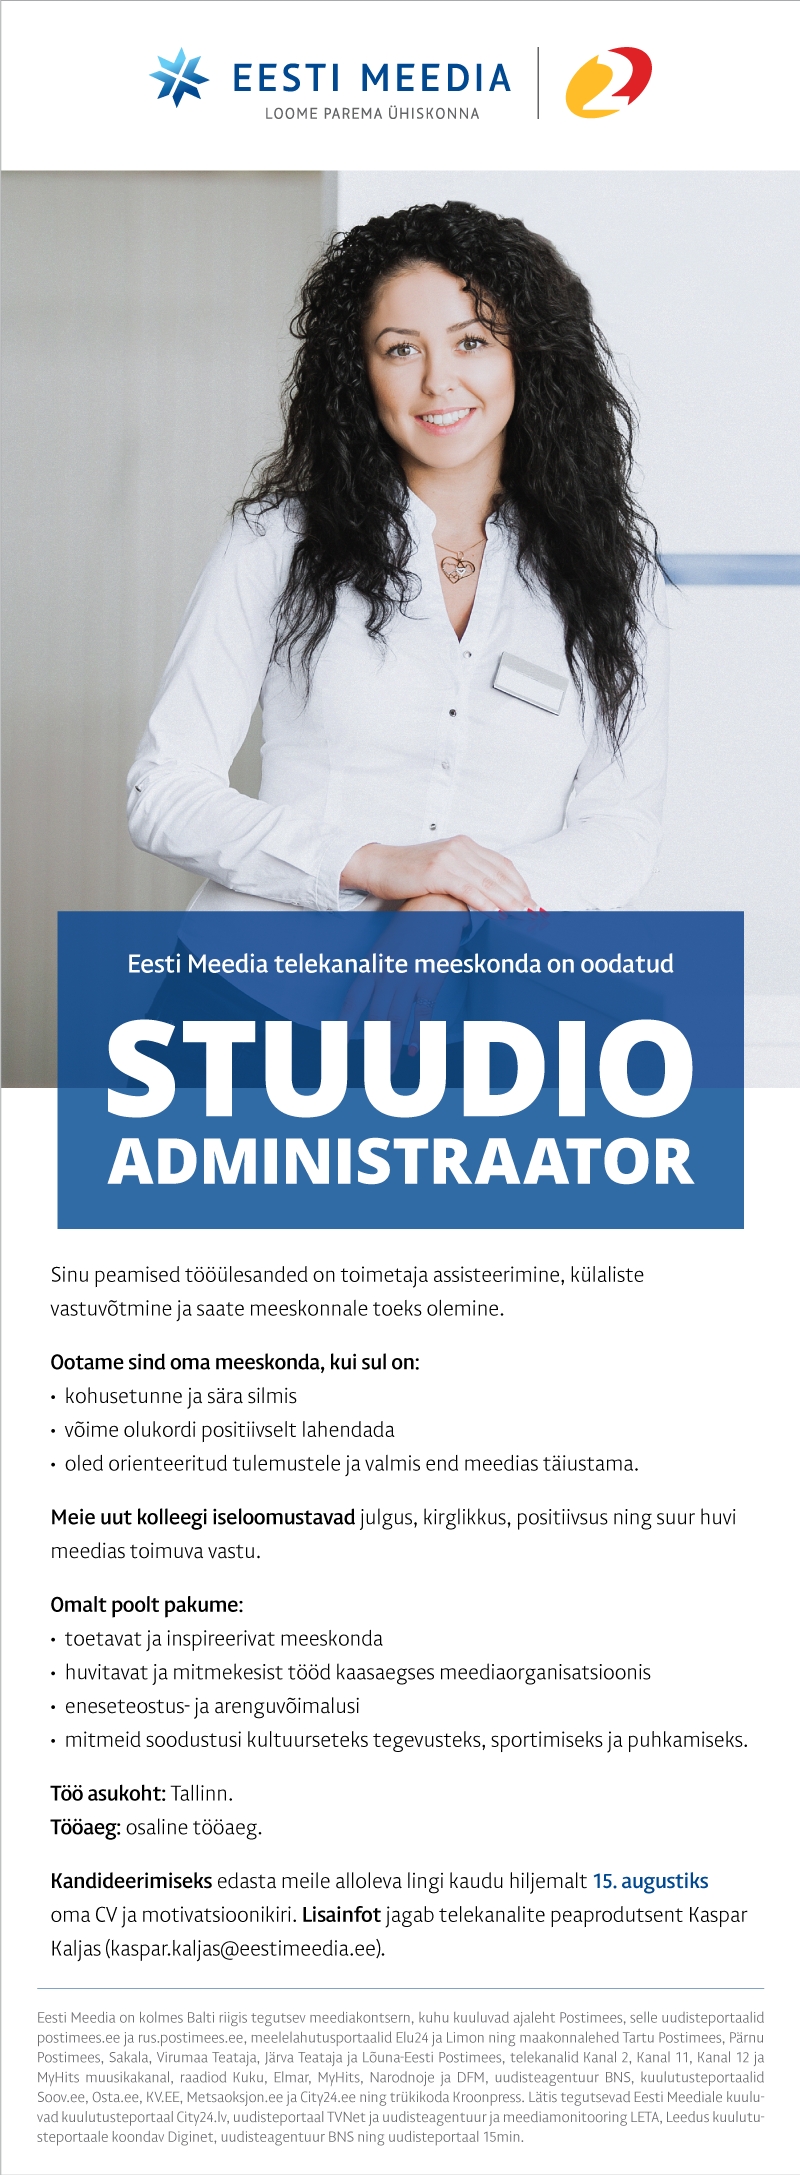 Eesti Meedia Stuudio administraator